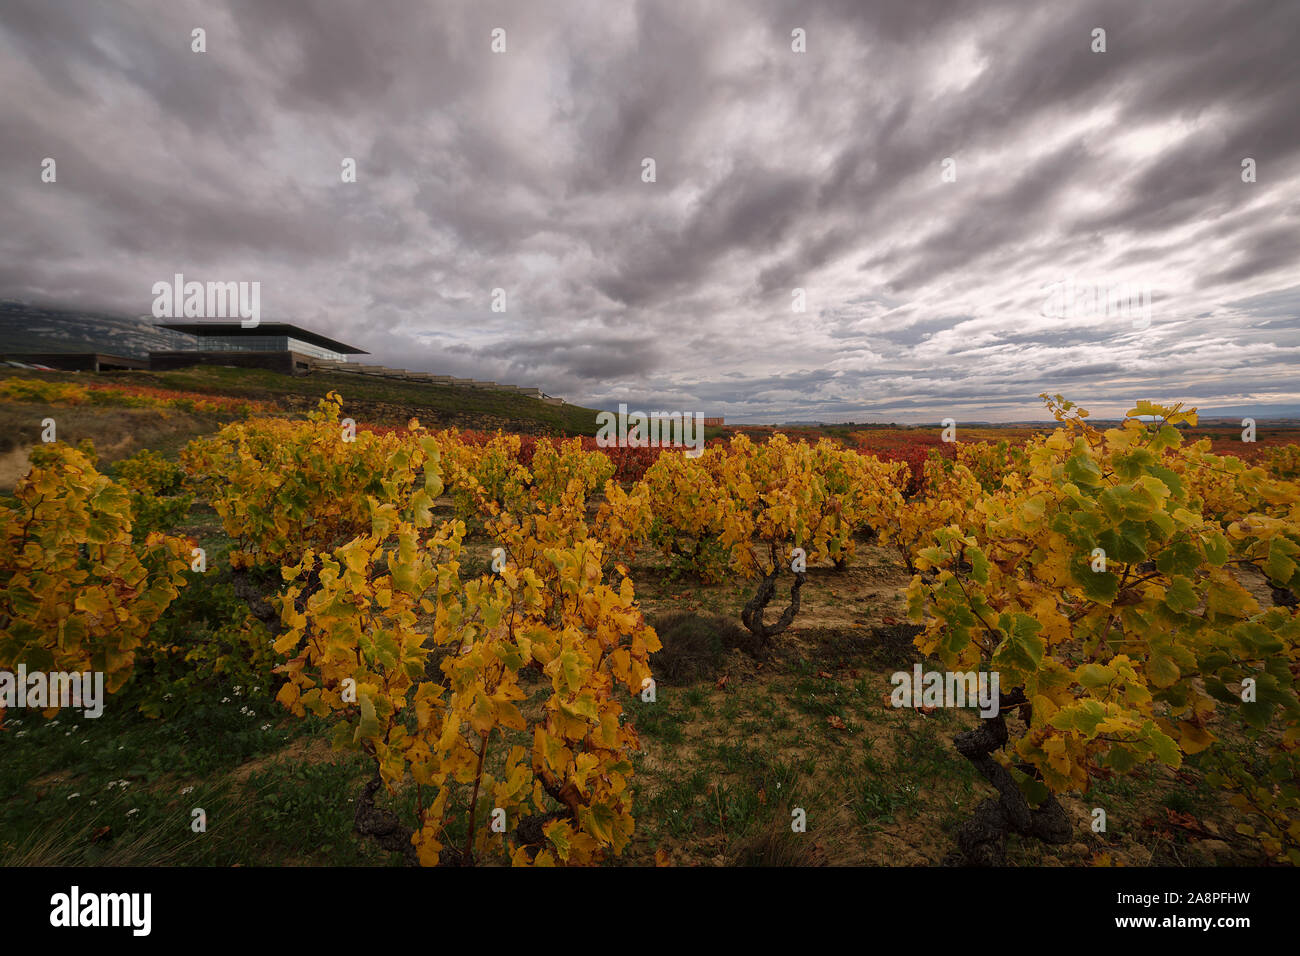 Baigorri winery in Samaniego, Rioja Alavesa, Spain Stock Photo